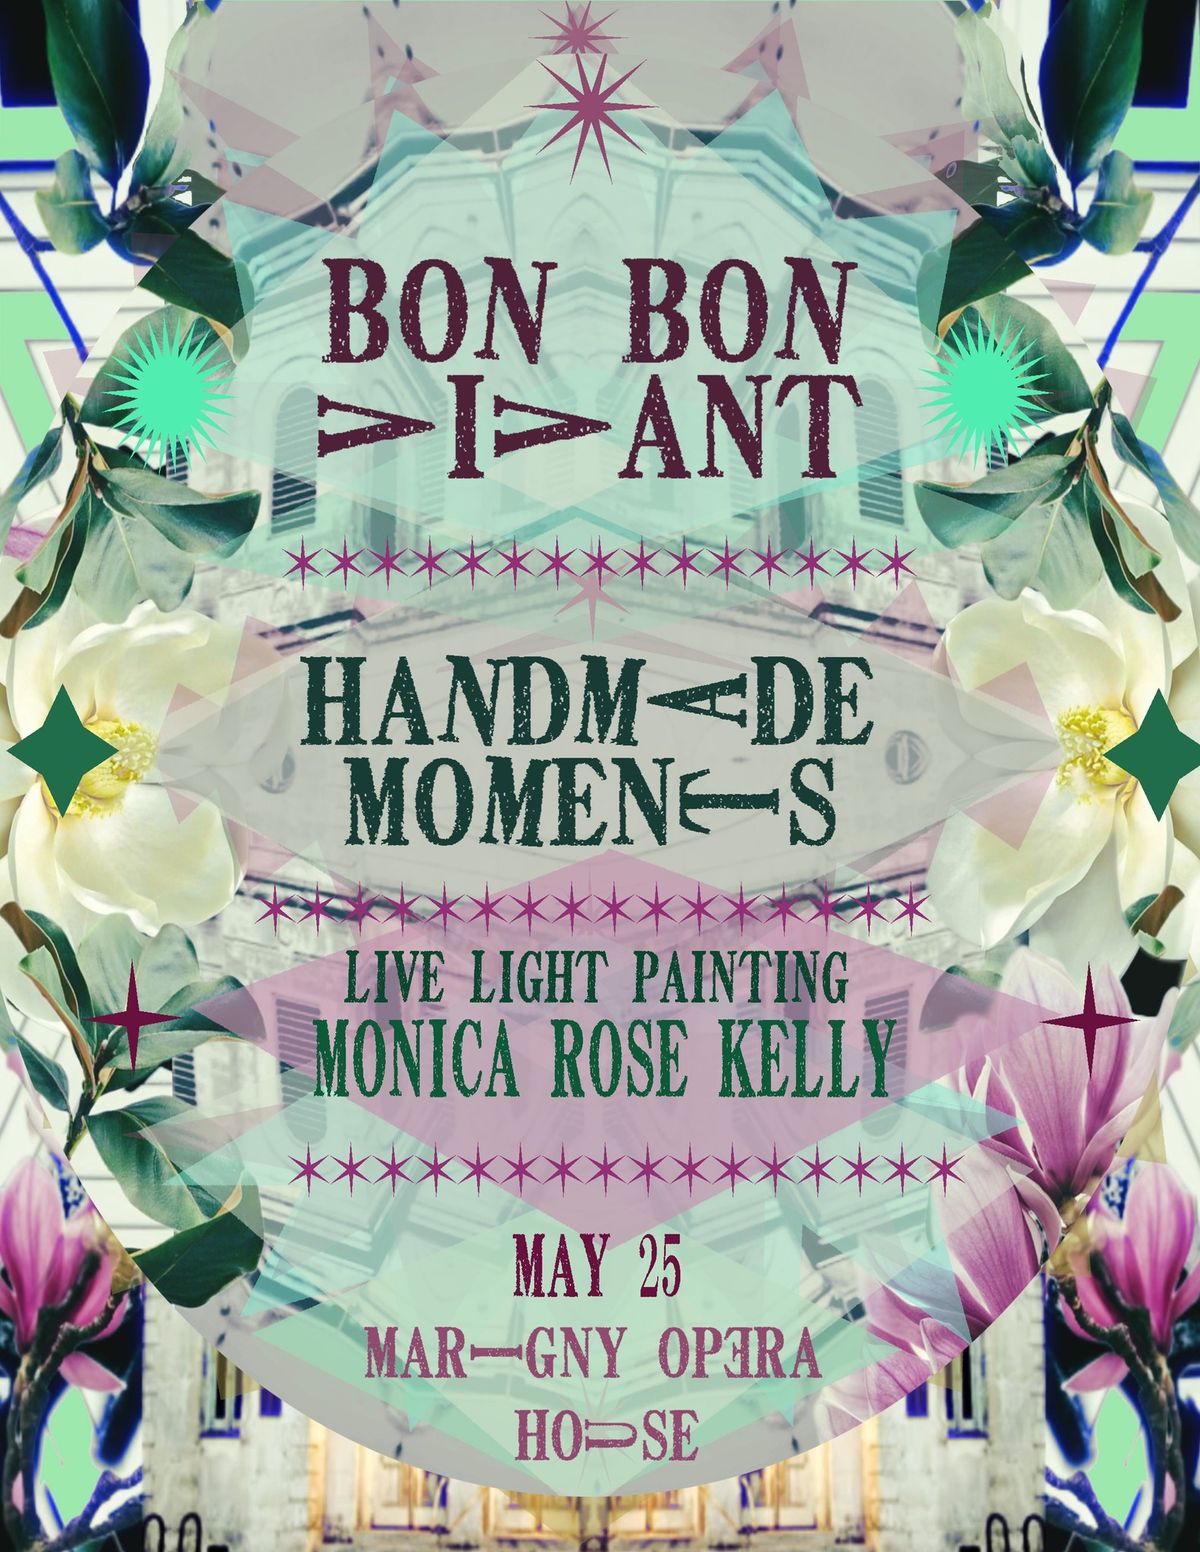 Bon Bon Vivant + Handmade Moments + Monica Rose Kelly